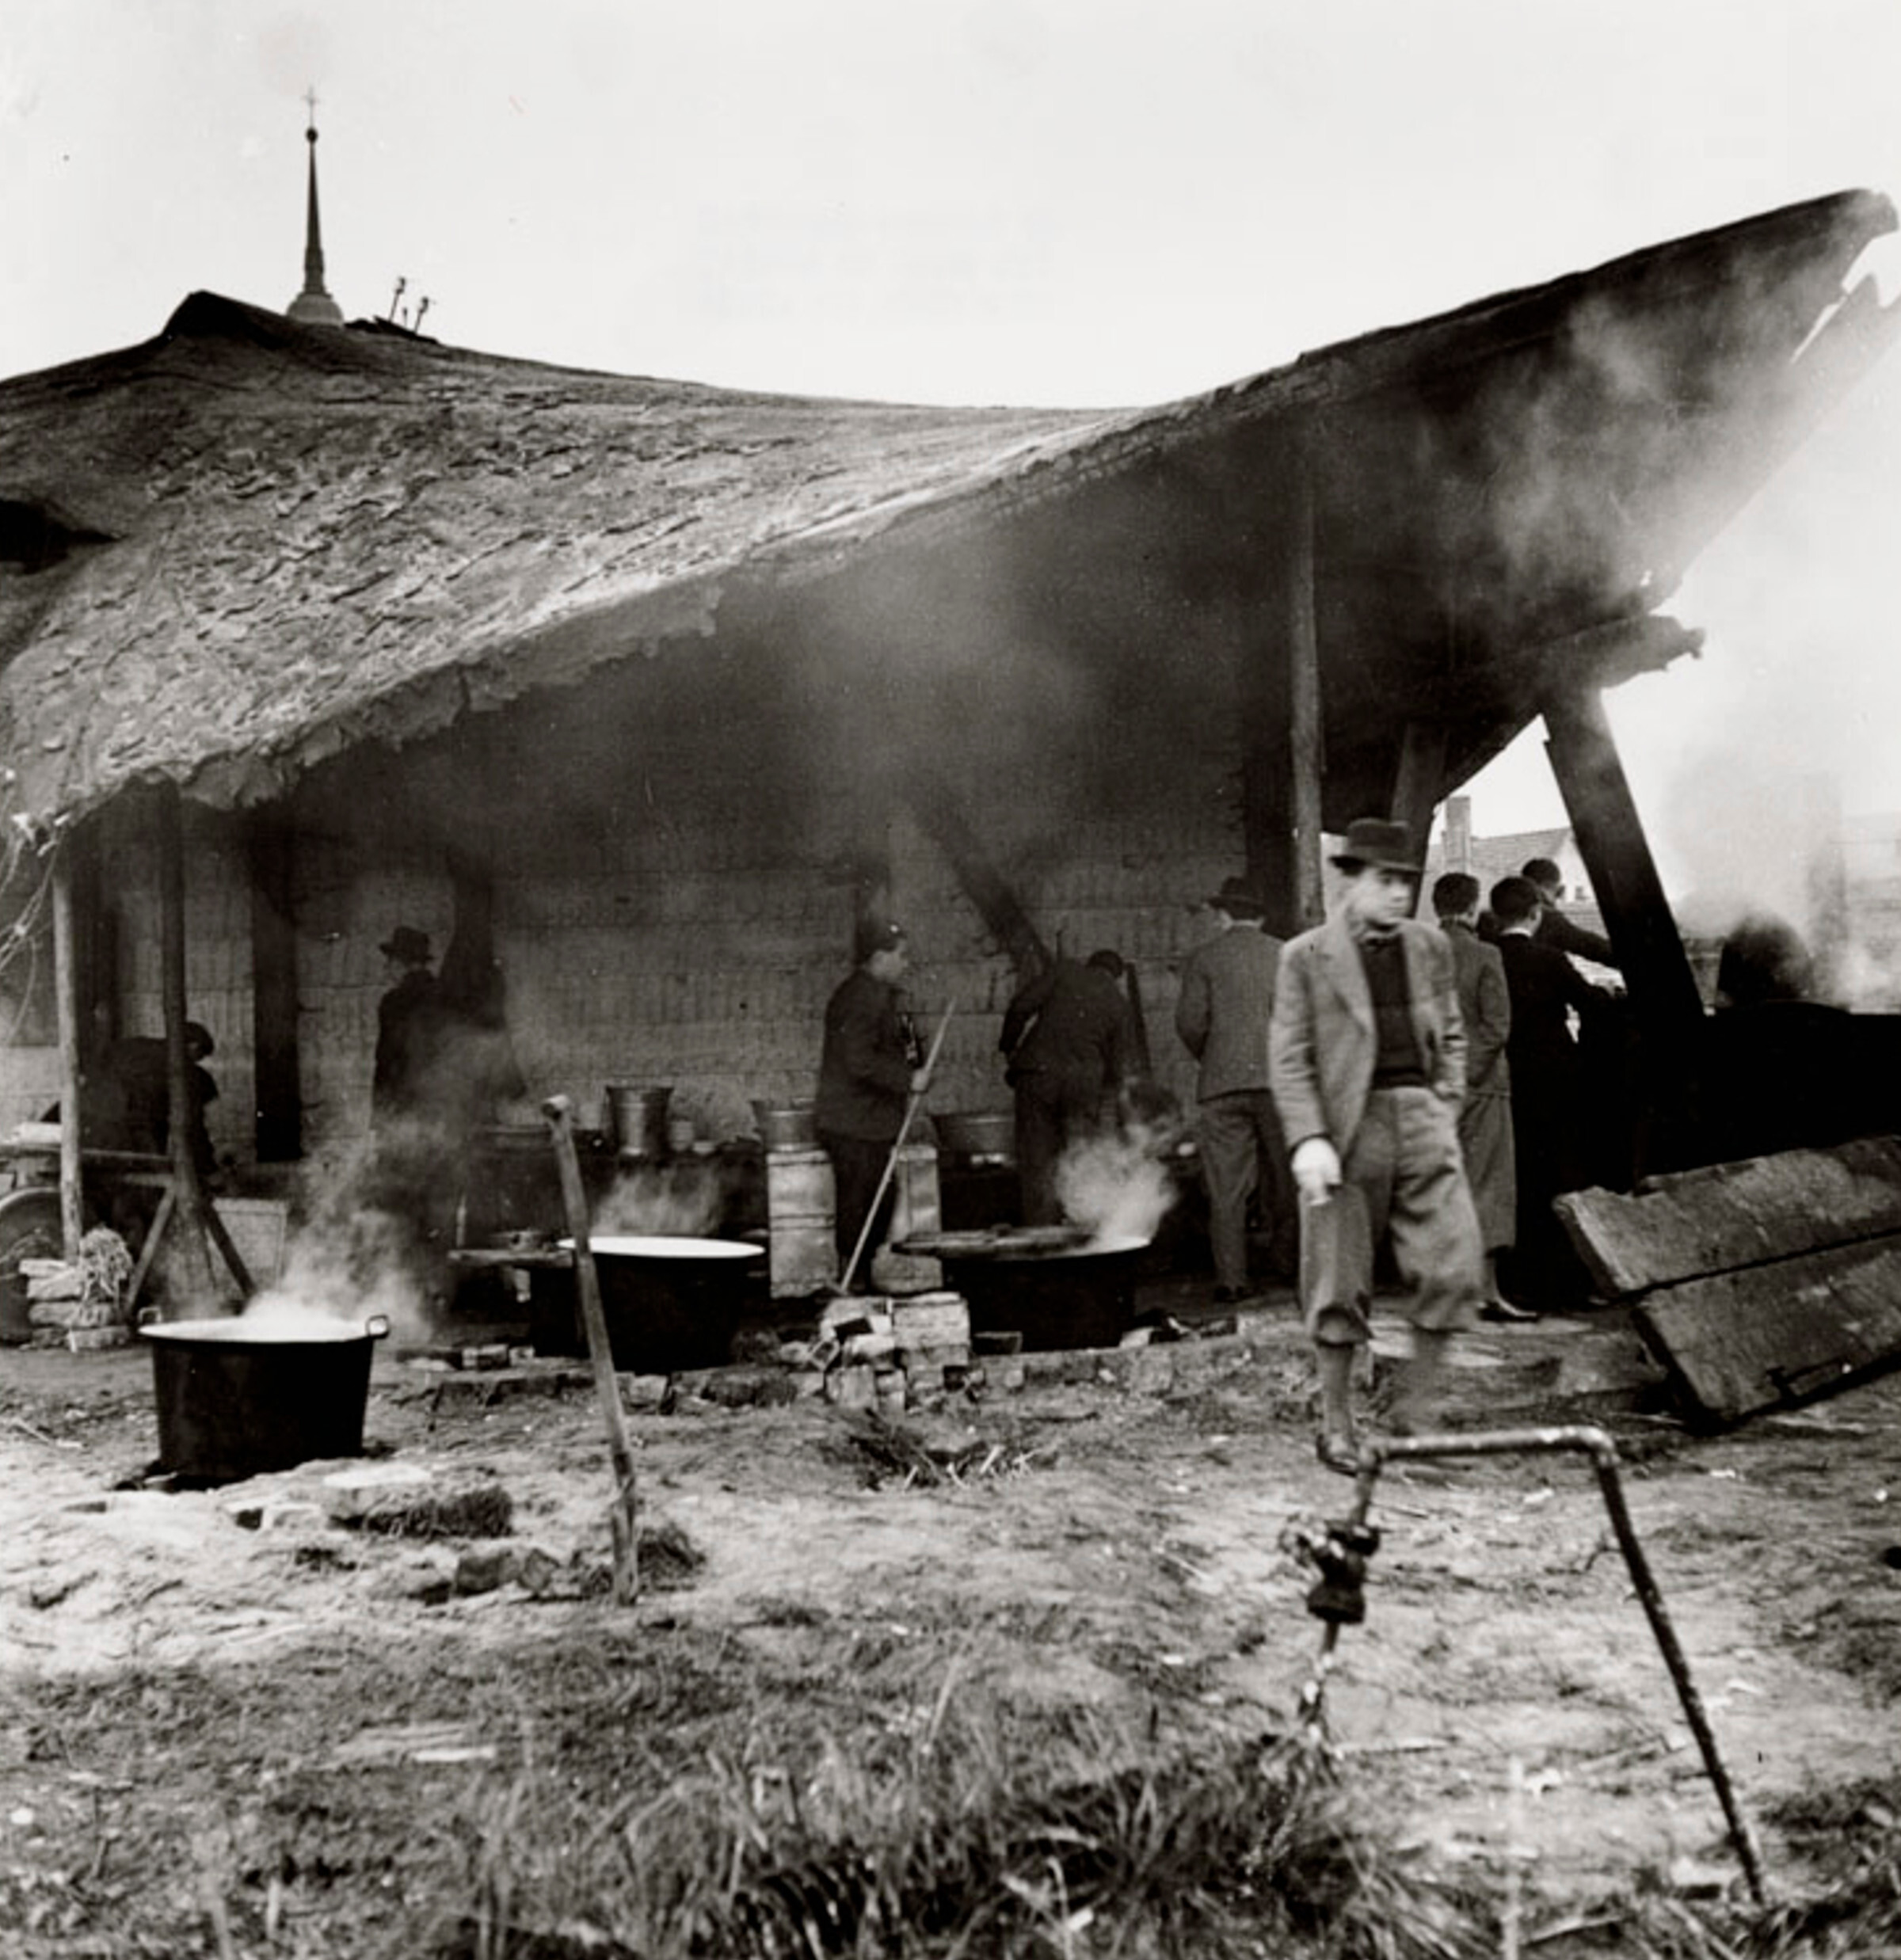 Еврейские беженцы в импровизированной уличной кухне, польский лагерь для интернированных, Збашин, ноябрь 1938 г. Фотограф Роман Вишняк